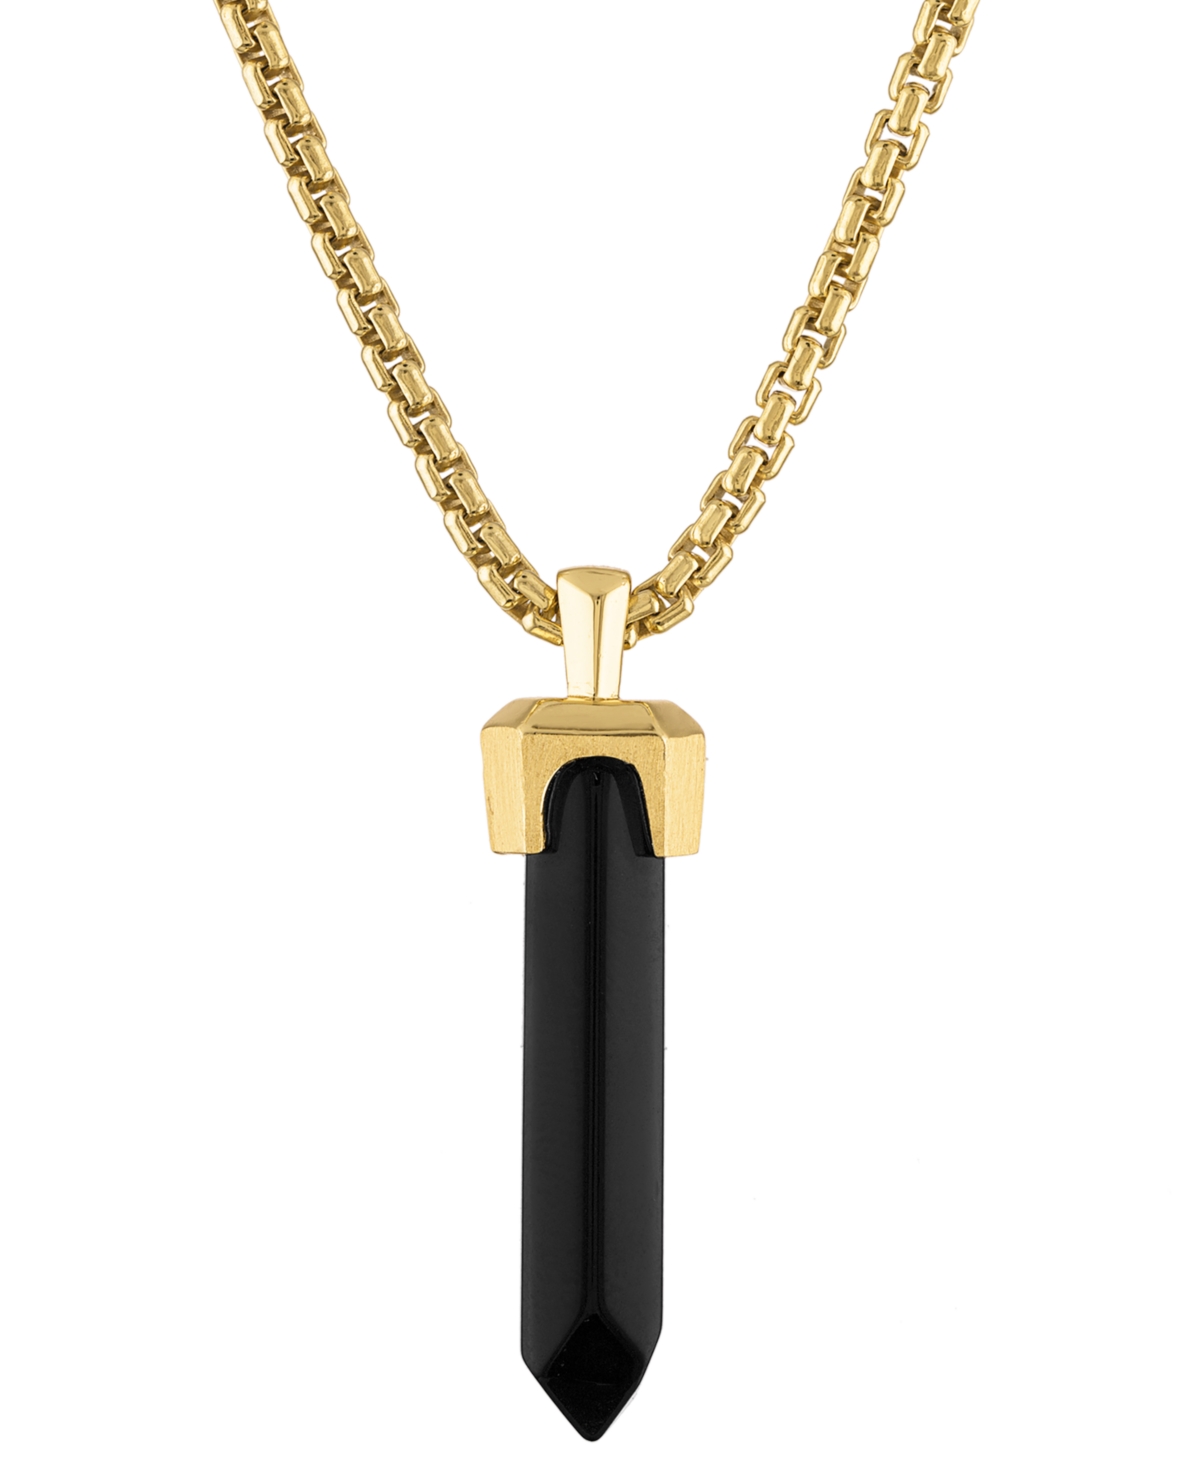 Bulova Men's Icon Black Onyx Pendant Necklace In 14k Gold, 24" + 2" Extender In Na